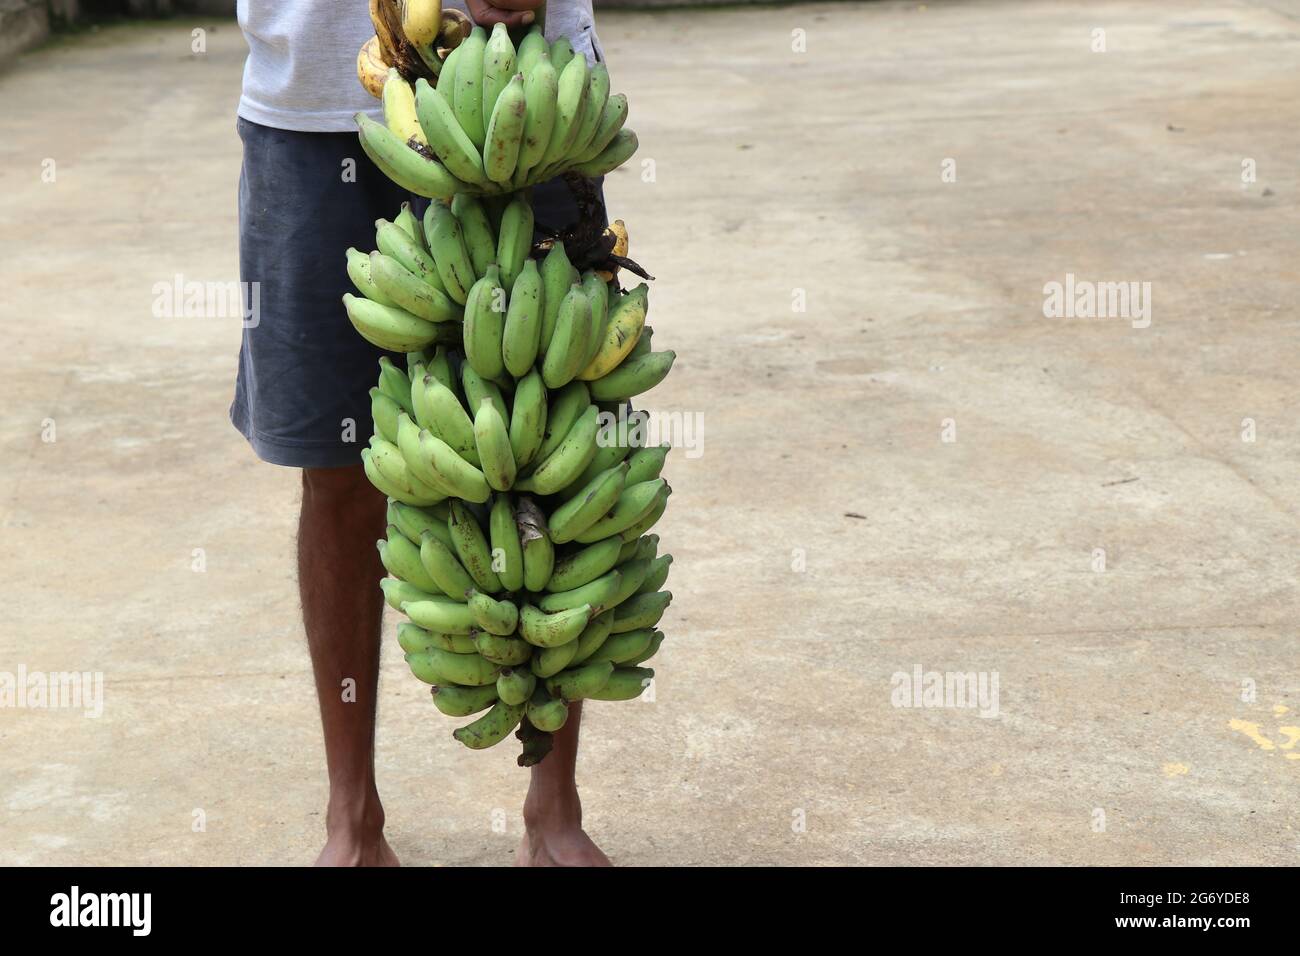 Lange Bananenbündel, die reife und unreife oder grüne und gelbe Bananen enthält, heben Sie von Hand, um die Höhe des Bündels zu messen Stockfoto